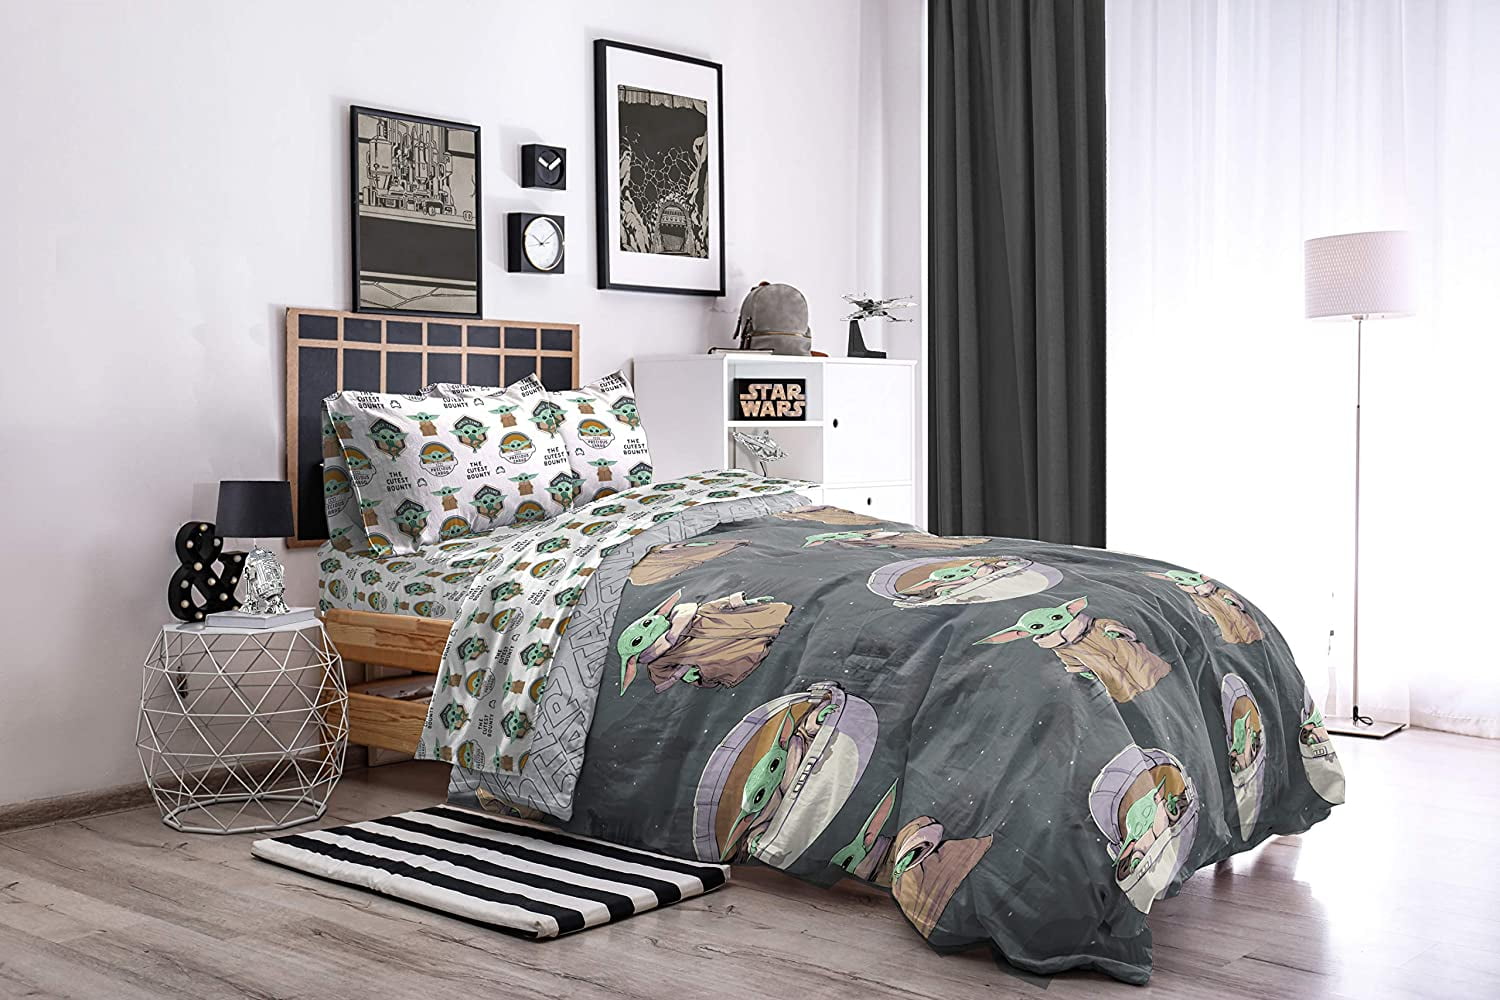 Baby Yoda Queen Comforter Sheet Set, Baby Room With Queen Size Bed